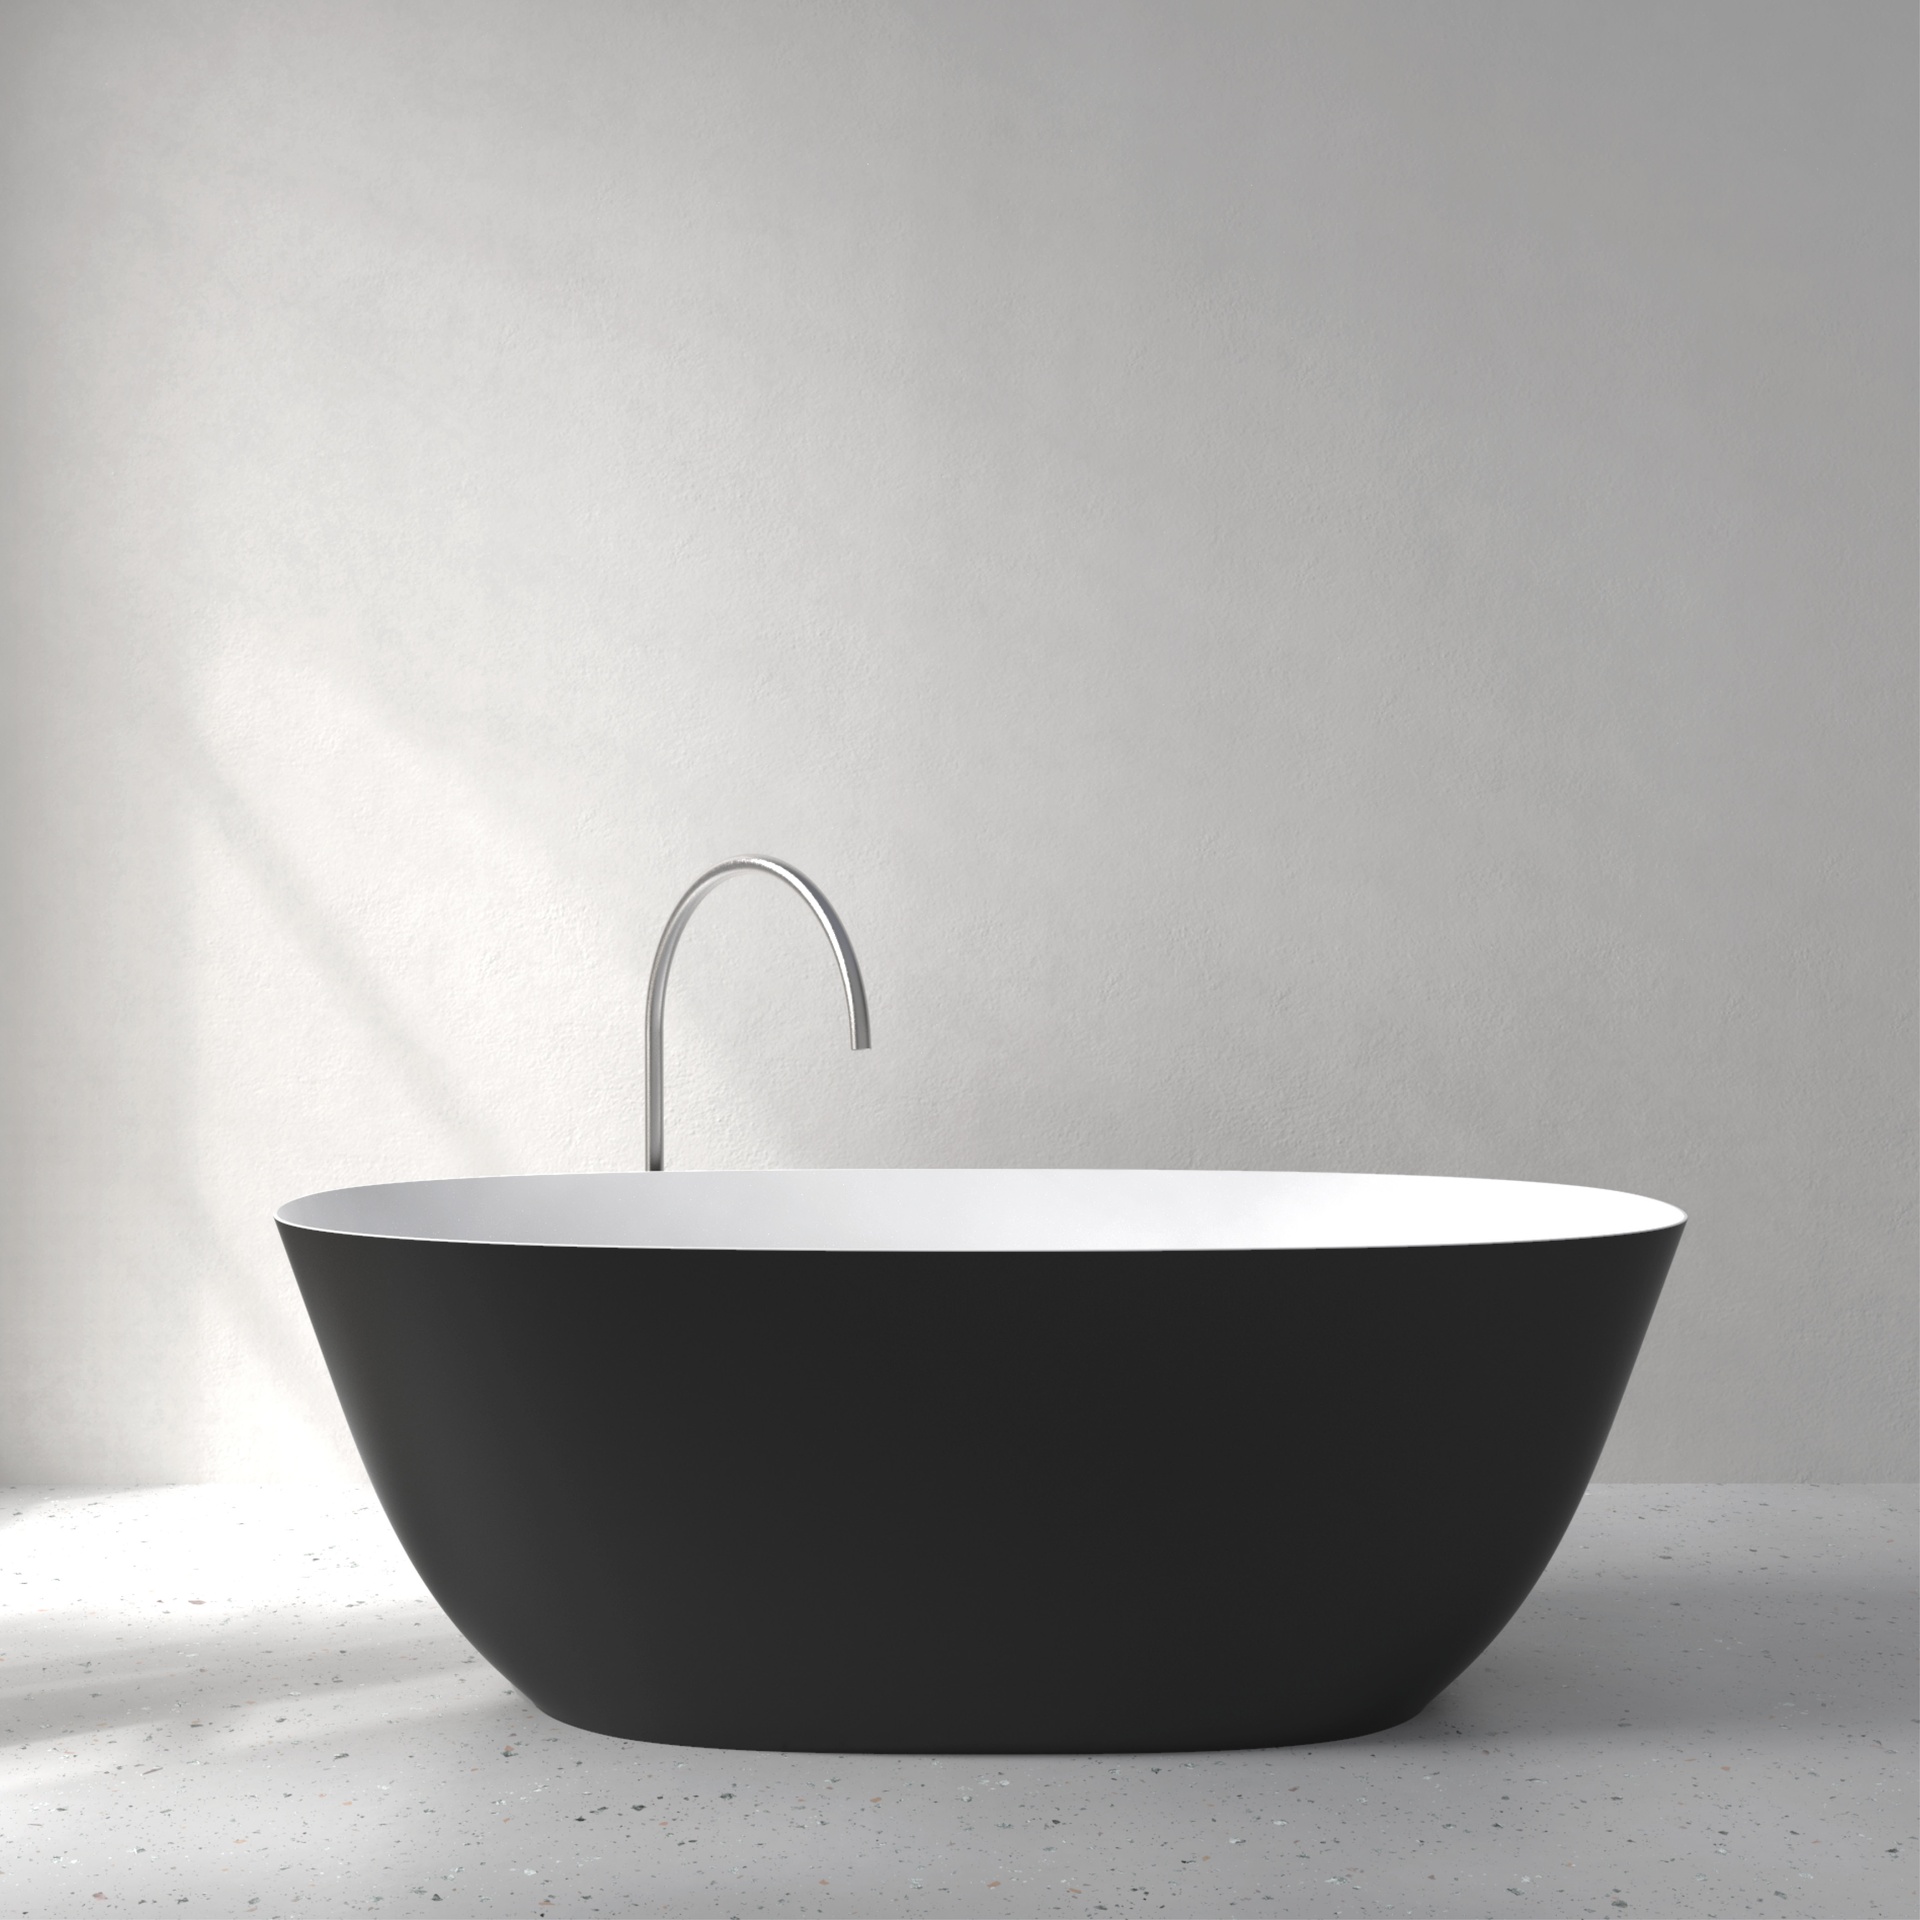 [FFI03-SDBLACK] Fine bath with Soft Touch (w1700 x d750 x h580mm, Deep Black)